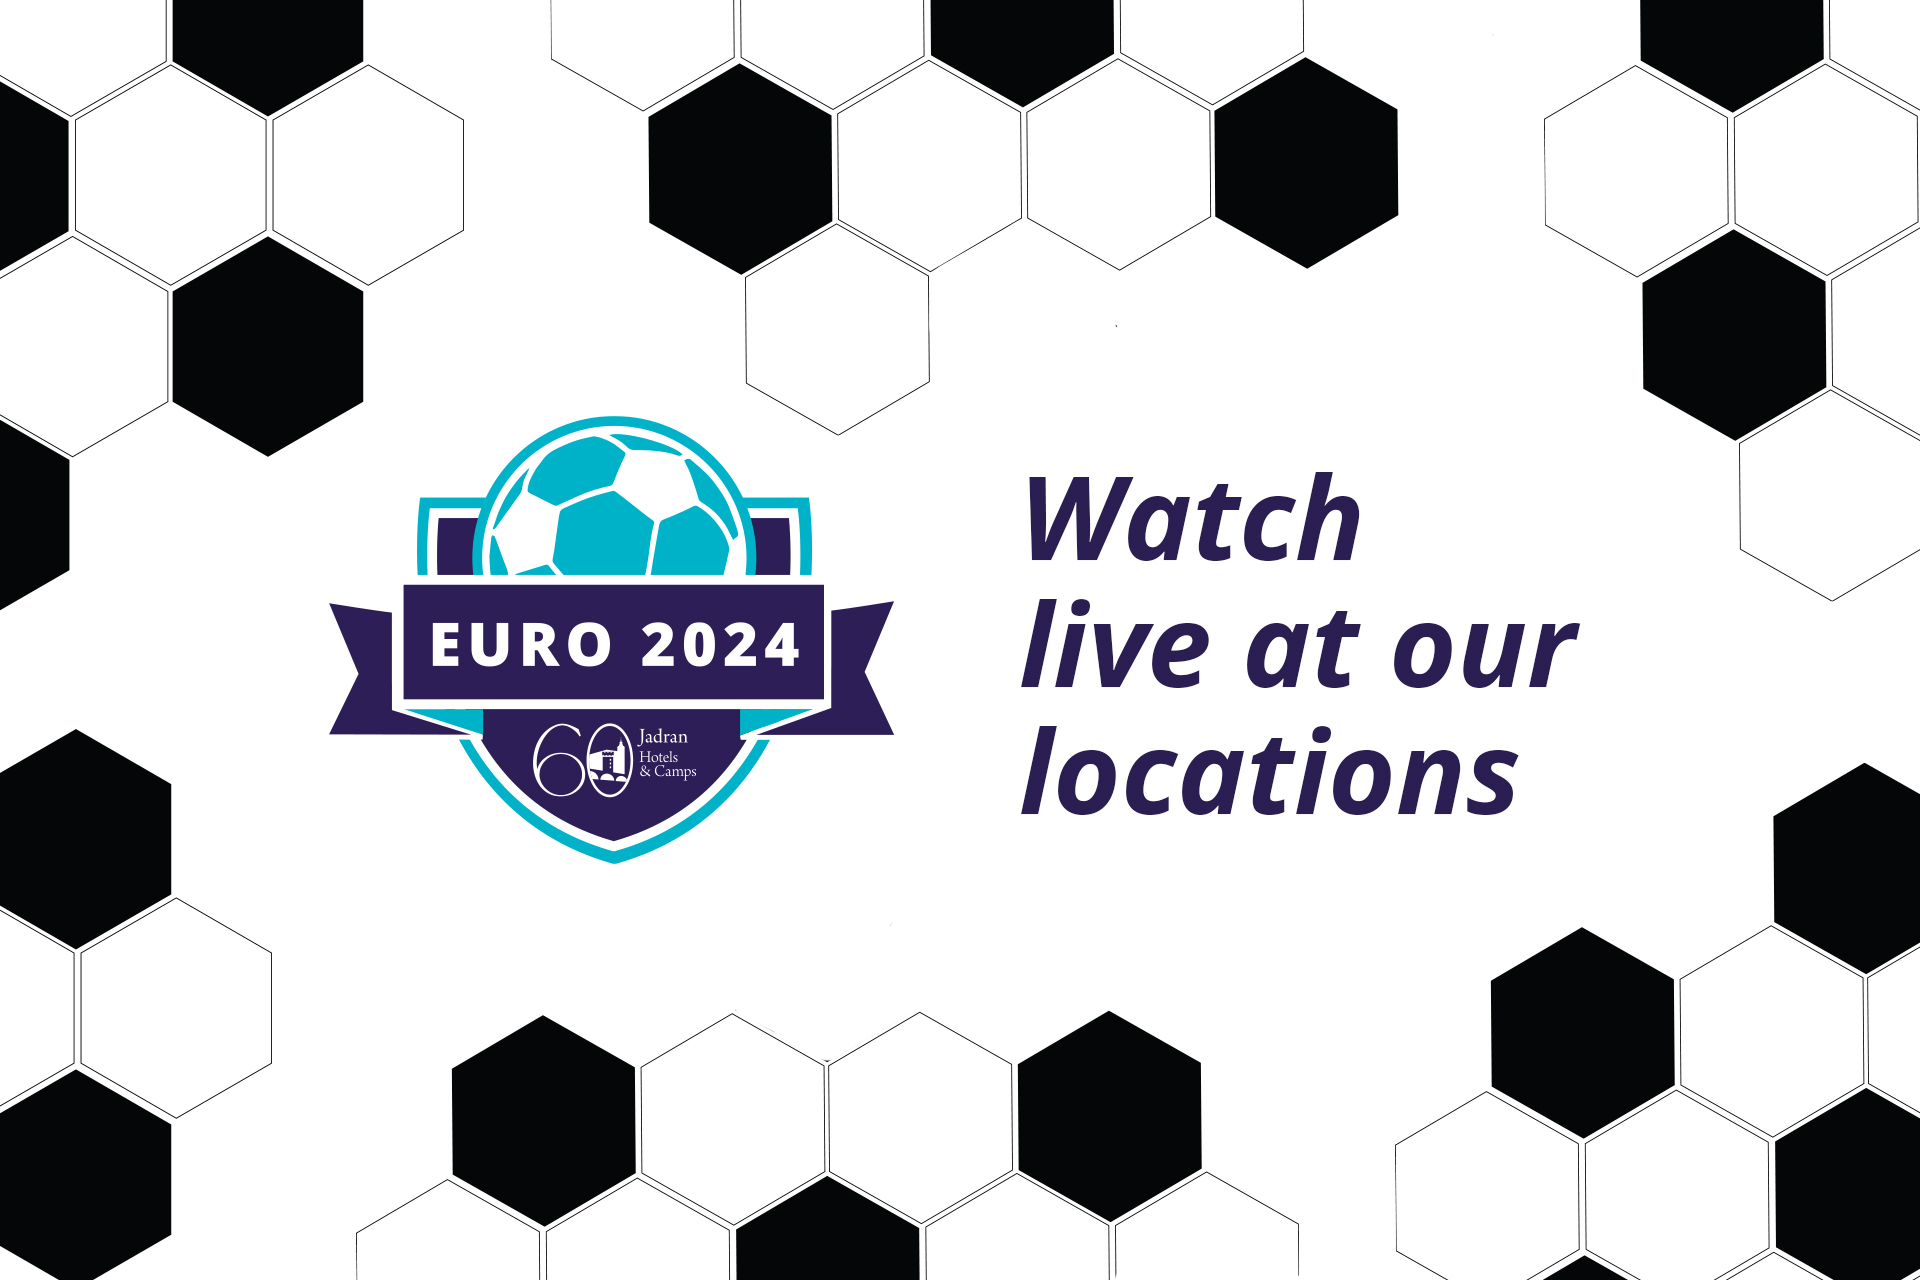 Pozivamo vas na zajedničko gledanje utakmica EURO 2024!